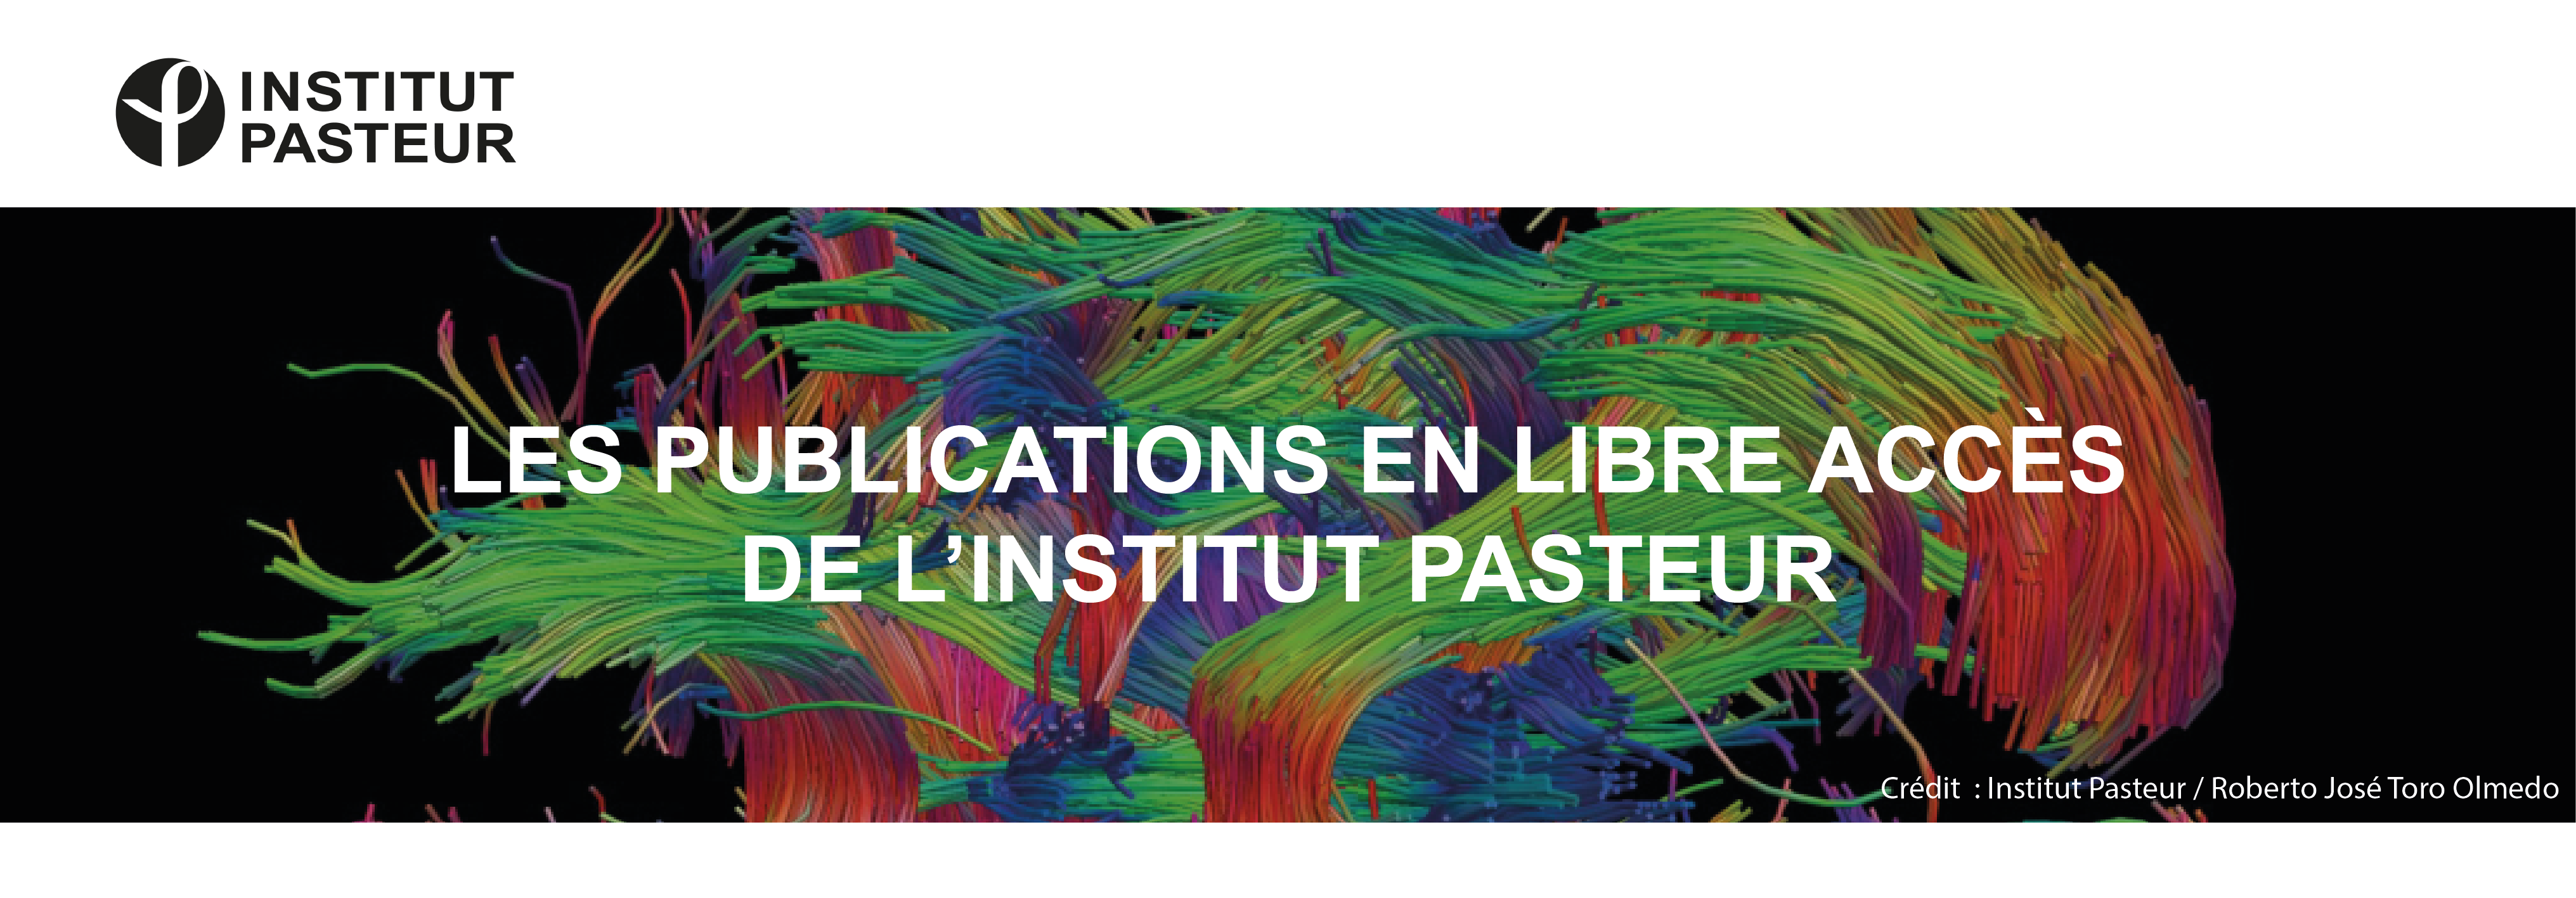 Les publications en libre accès de l'Institut Pasteur